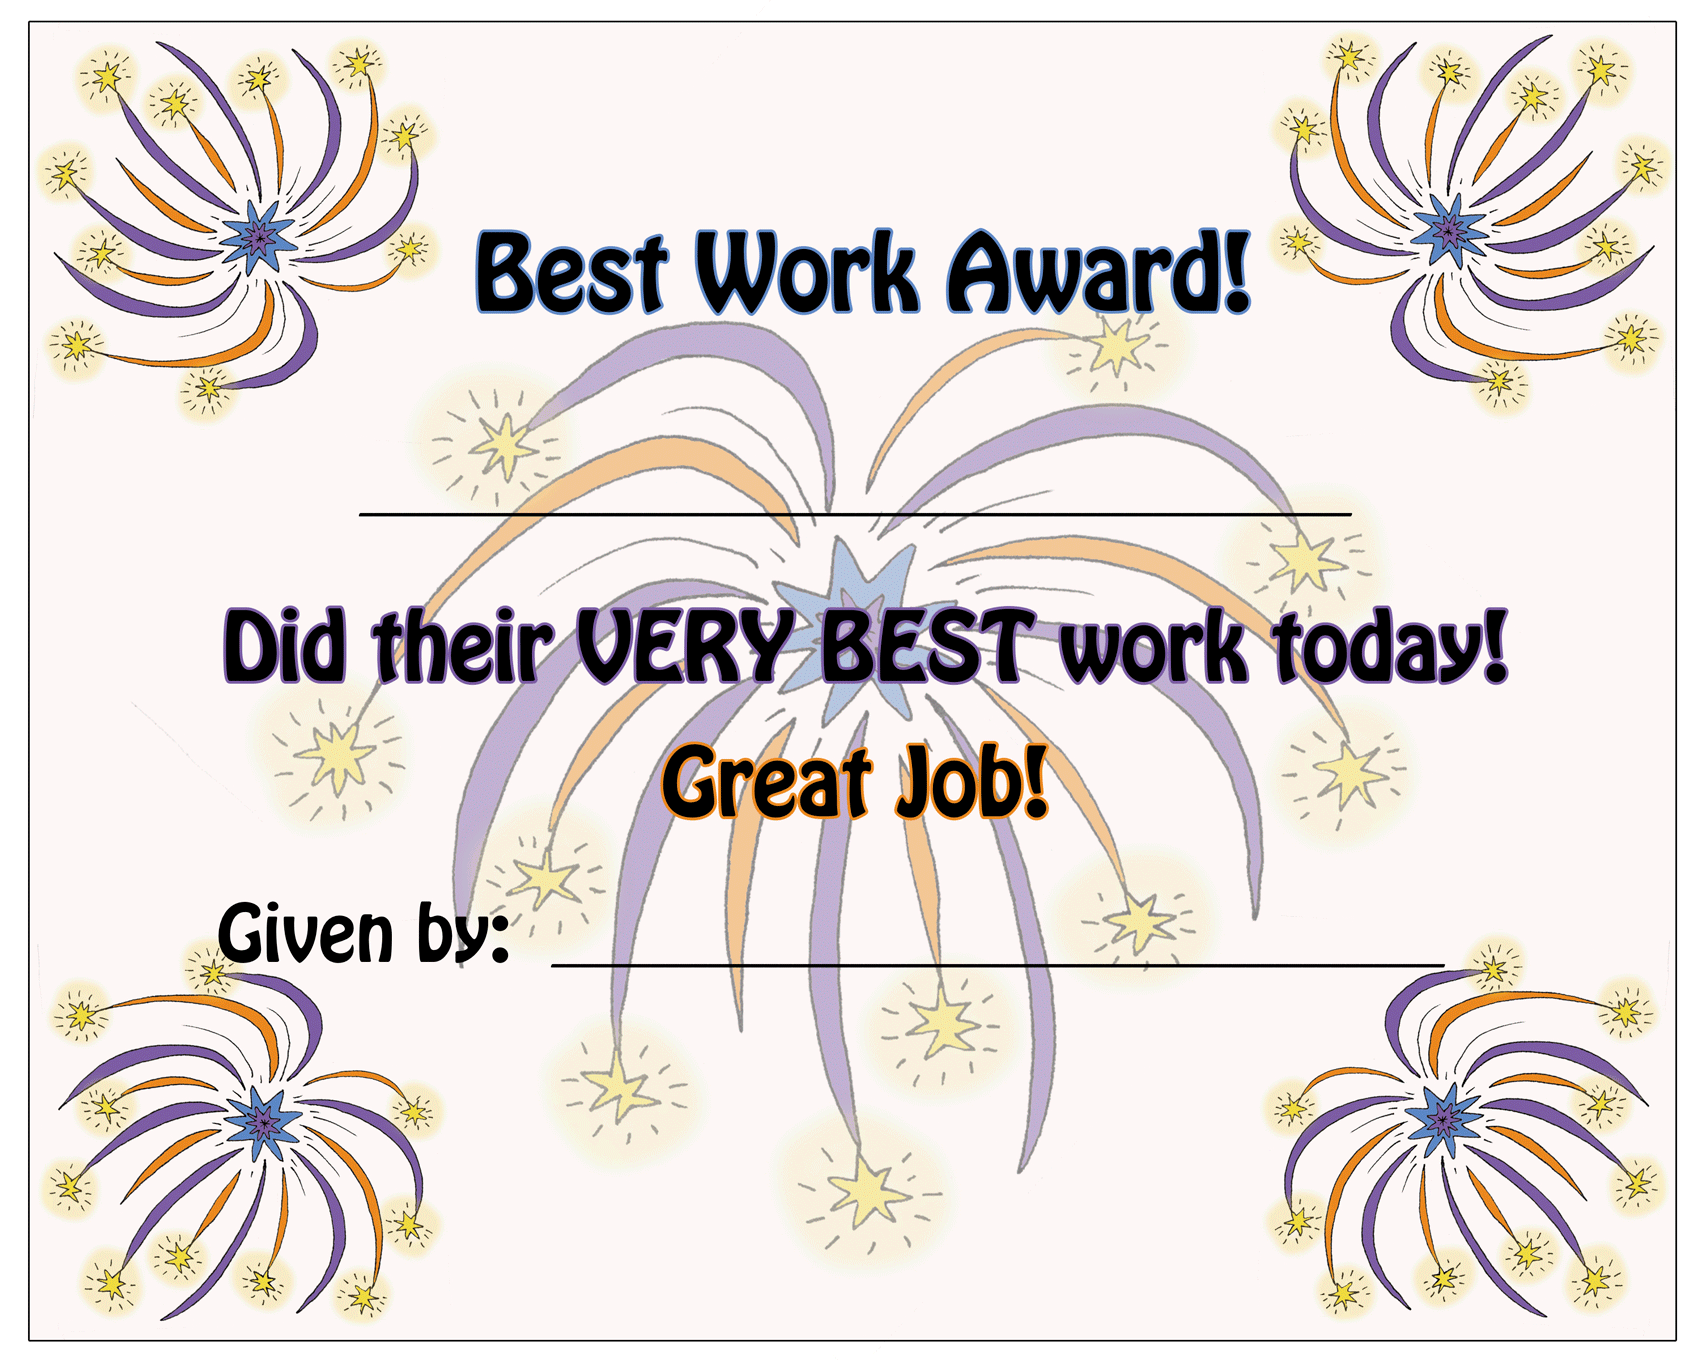 Best Work award